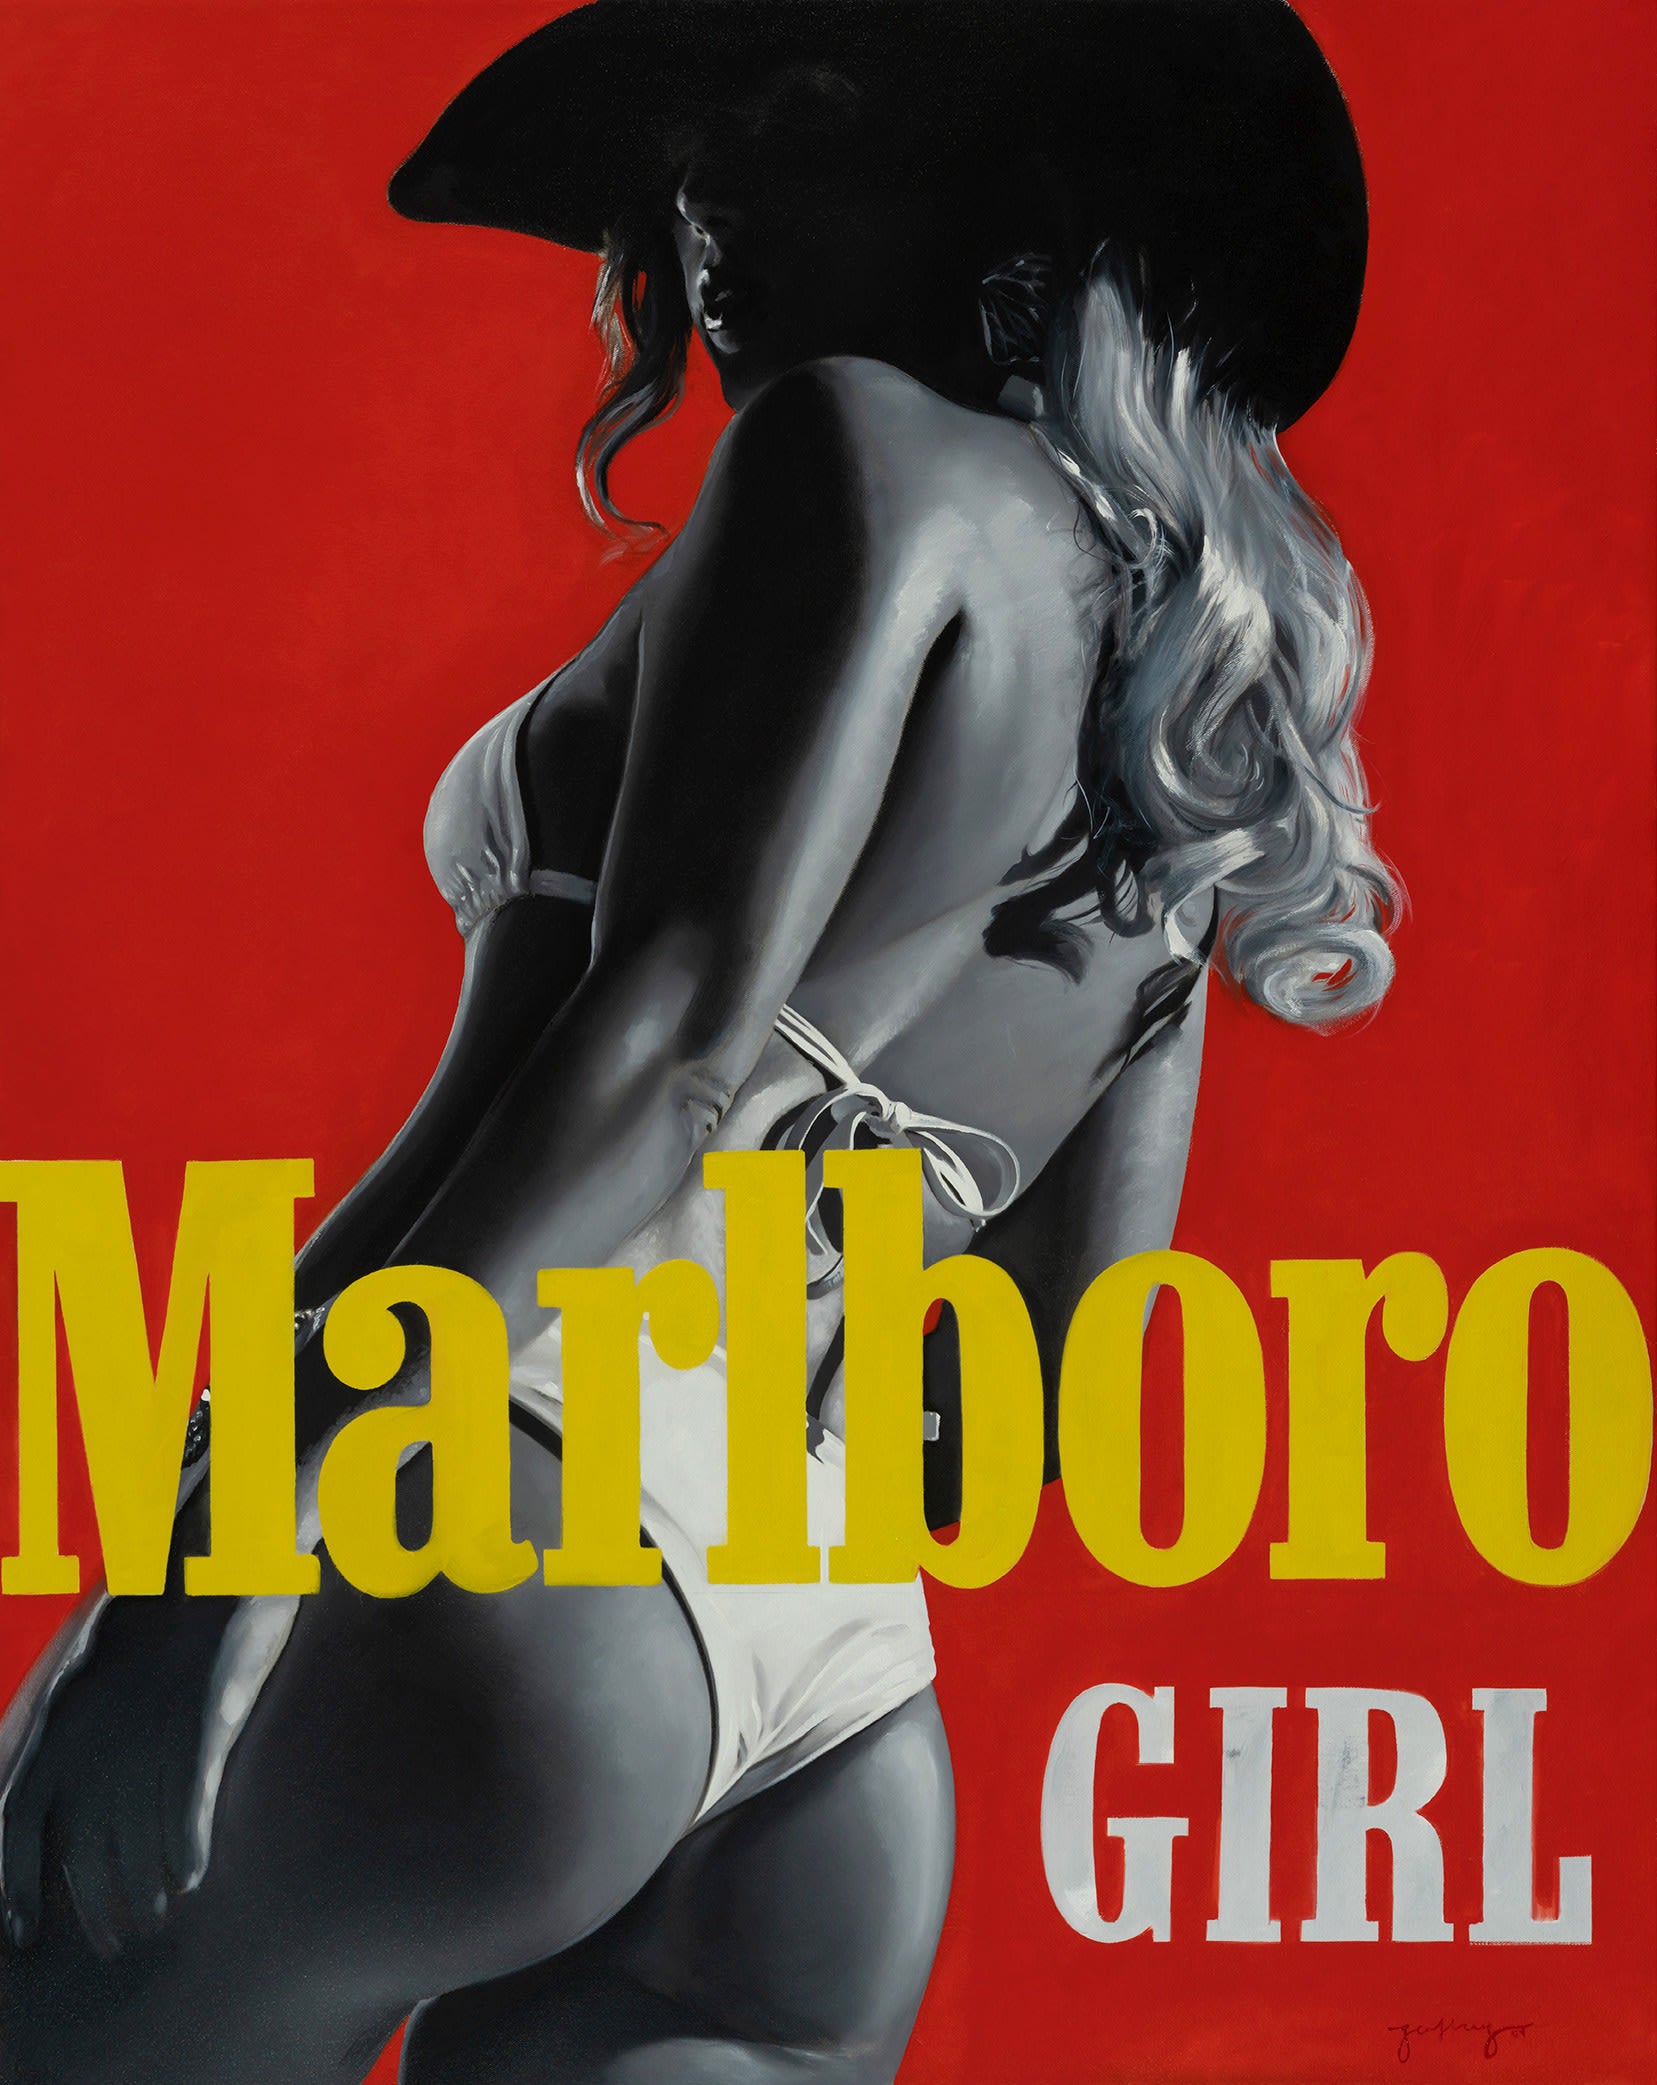 Marlboro Girl